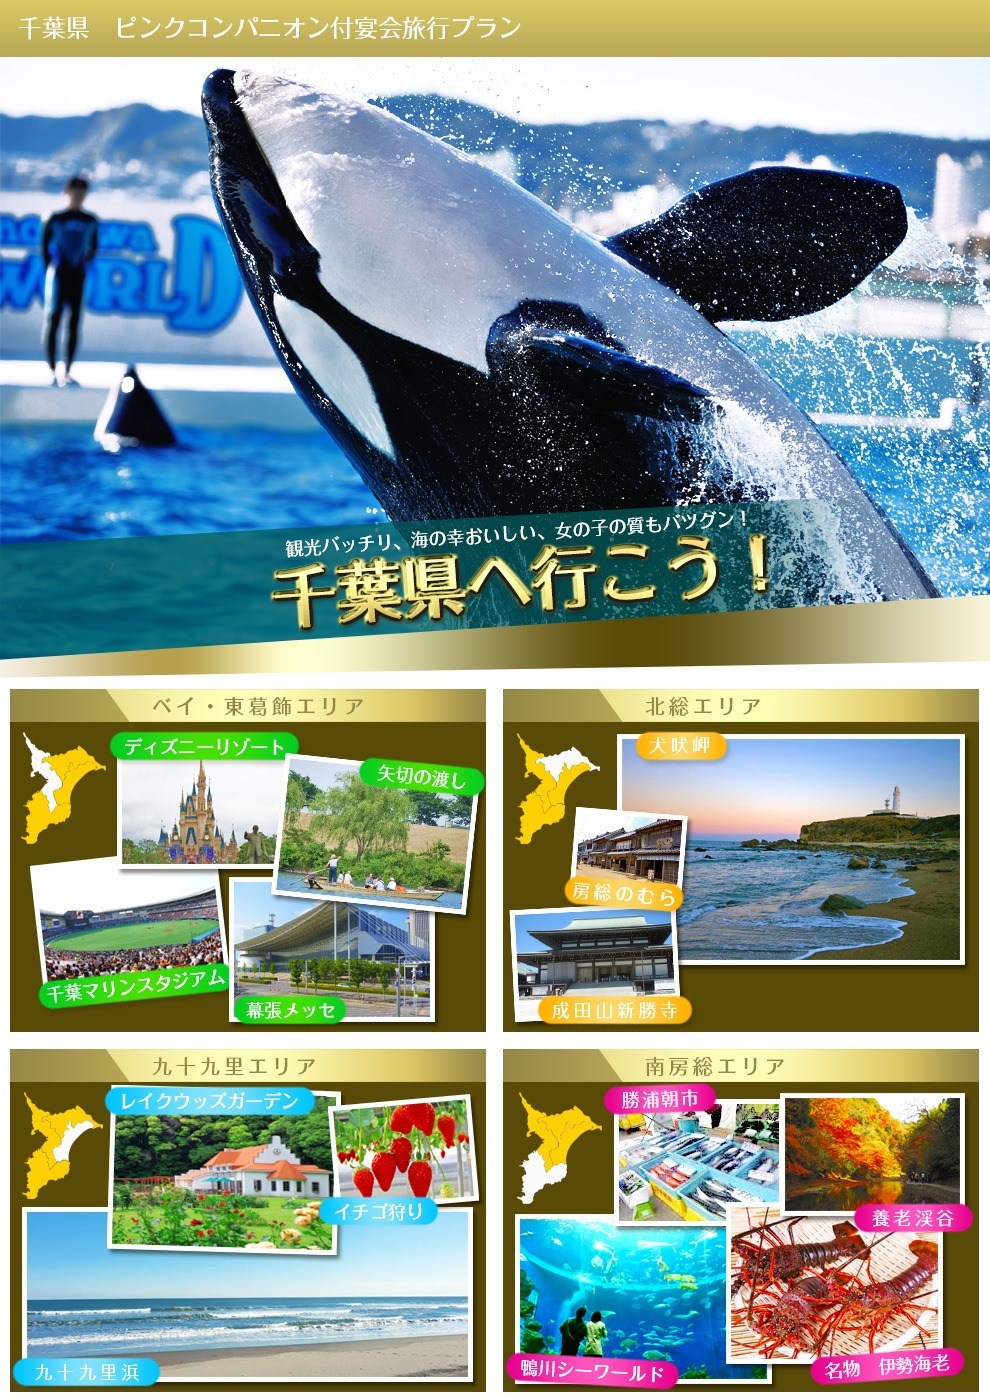 千葉県の周辺観光情報の画像